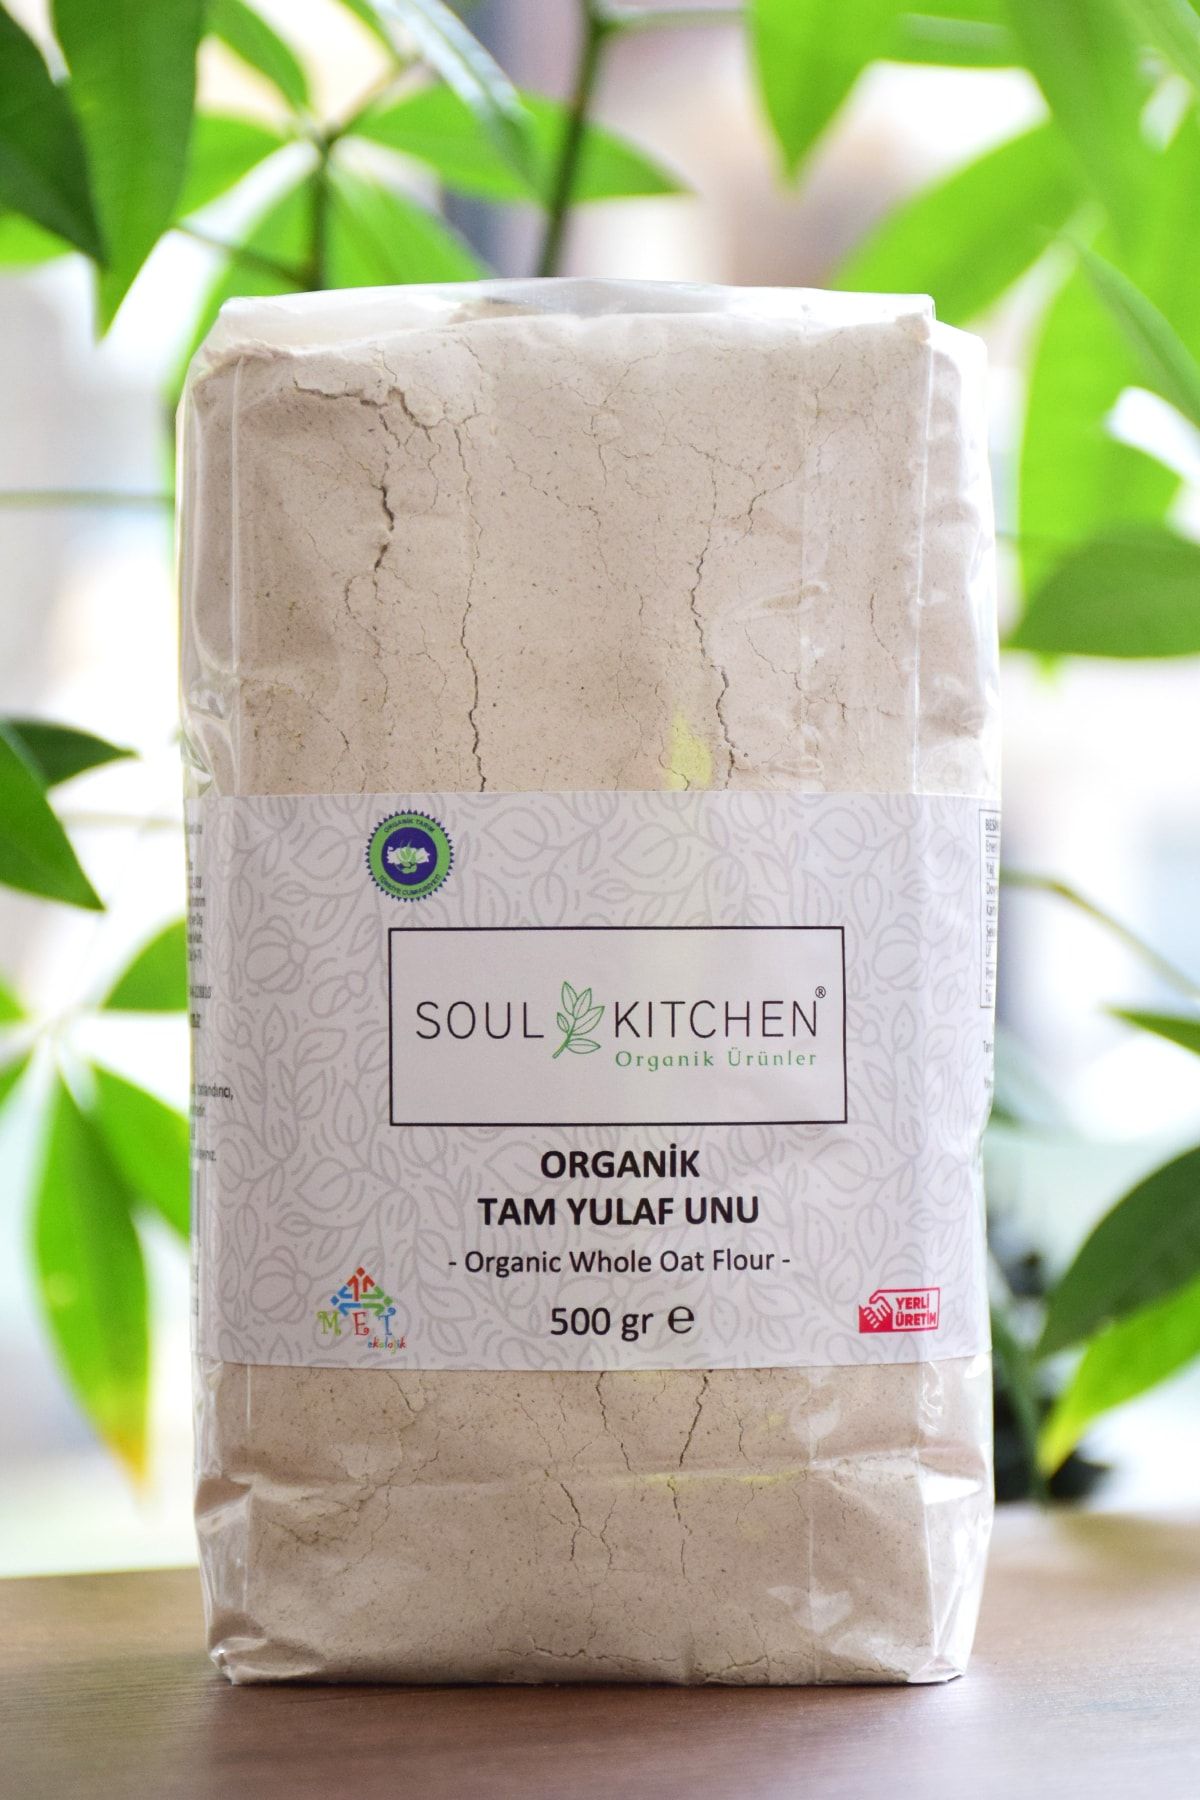 Soul Kitchen Organik Ürünler Organik Tam Yulaf Unu 500gr